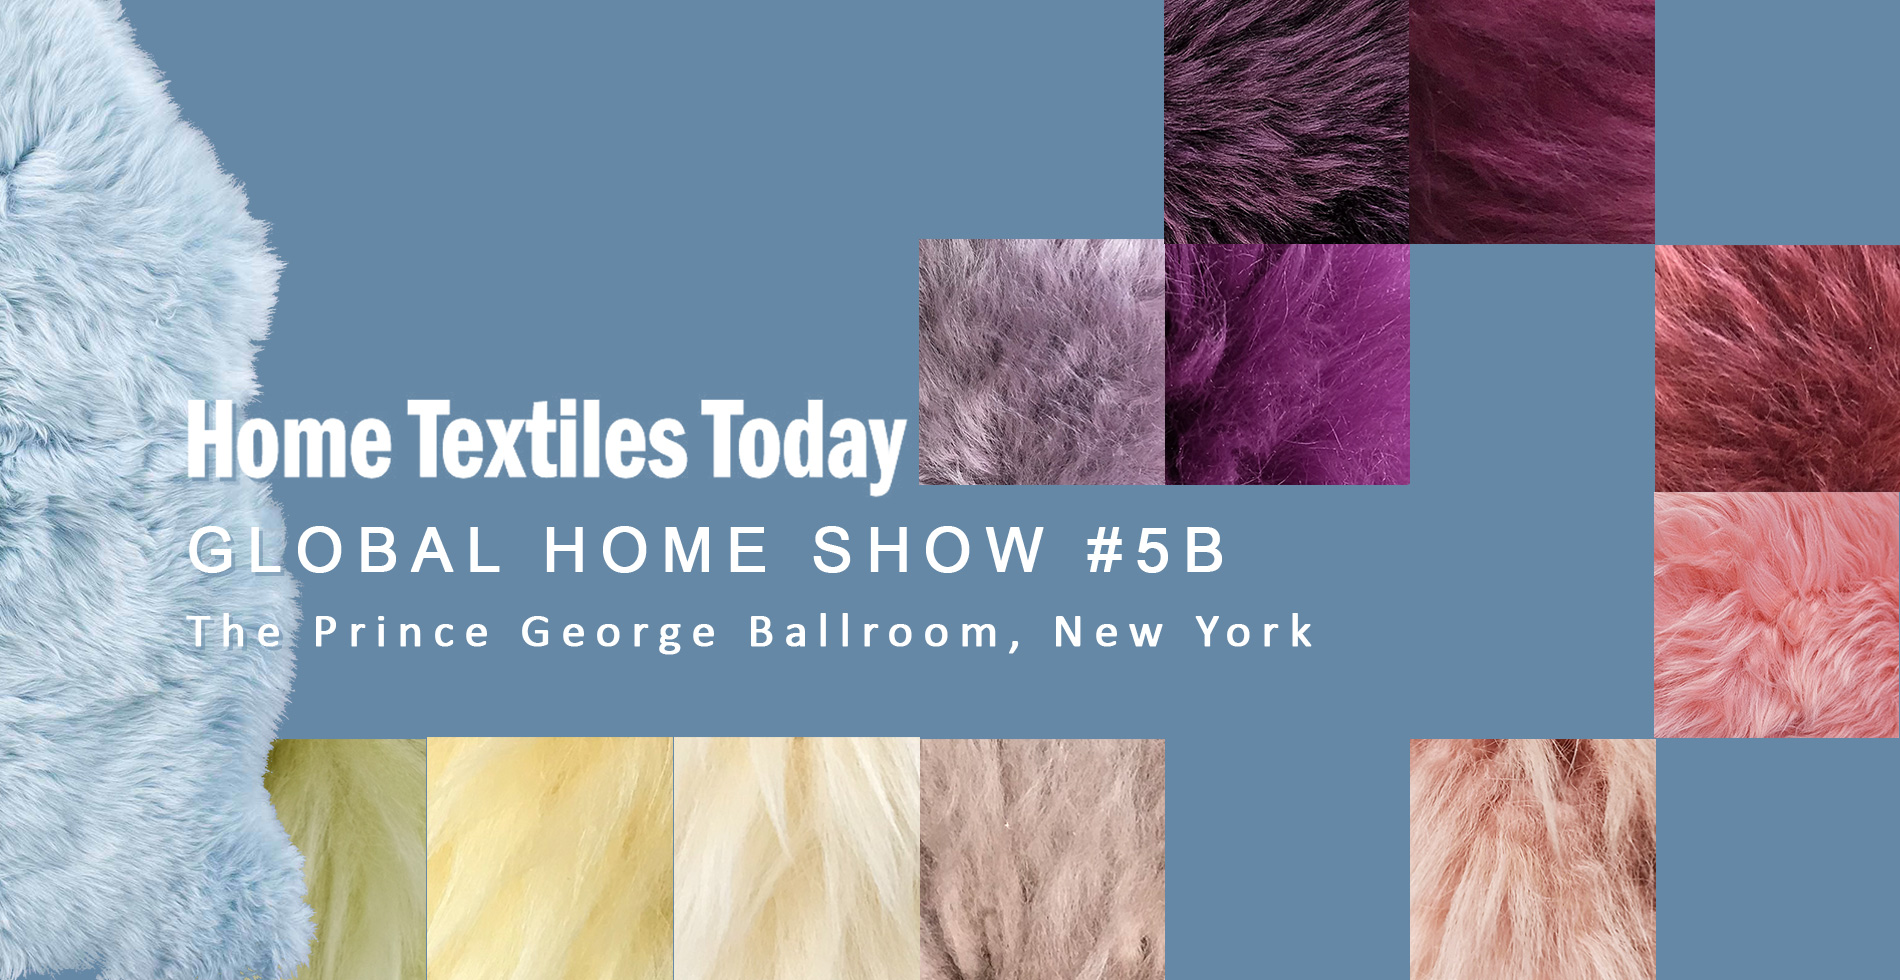 Sheepskins for textiles on HTT tradeshow 2019